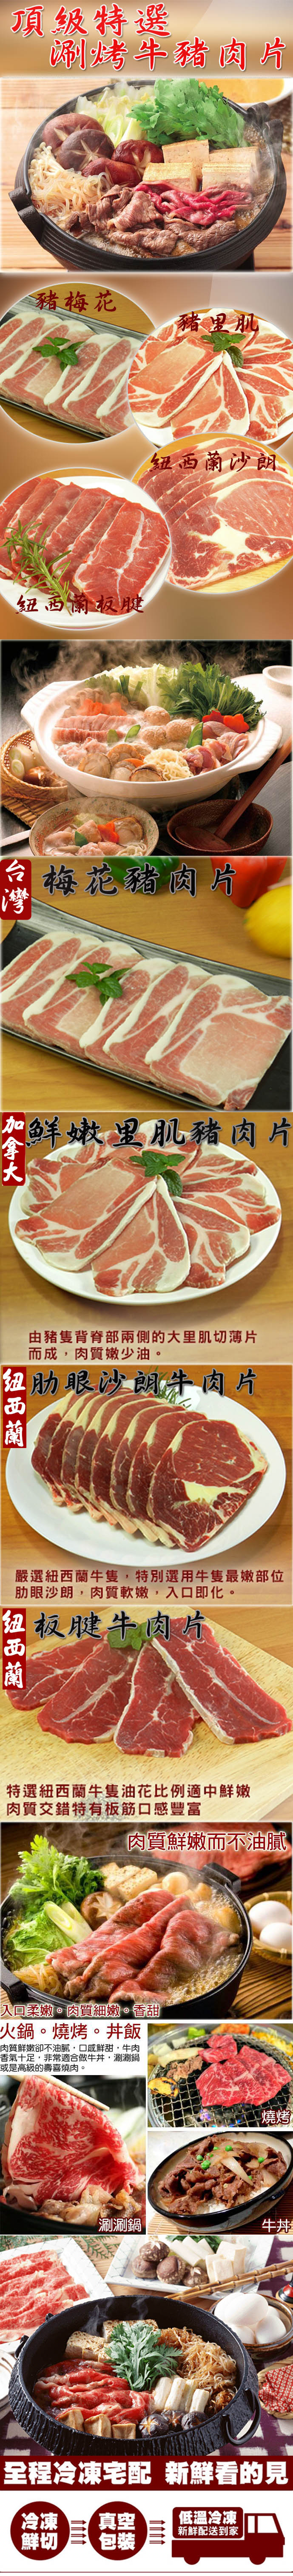       【好神】火鍋烤肉兩用肉片超值組合10包組(150g/包)